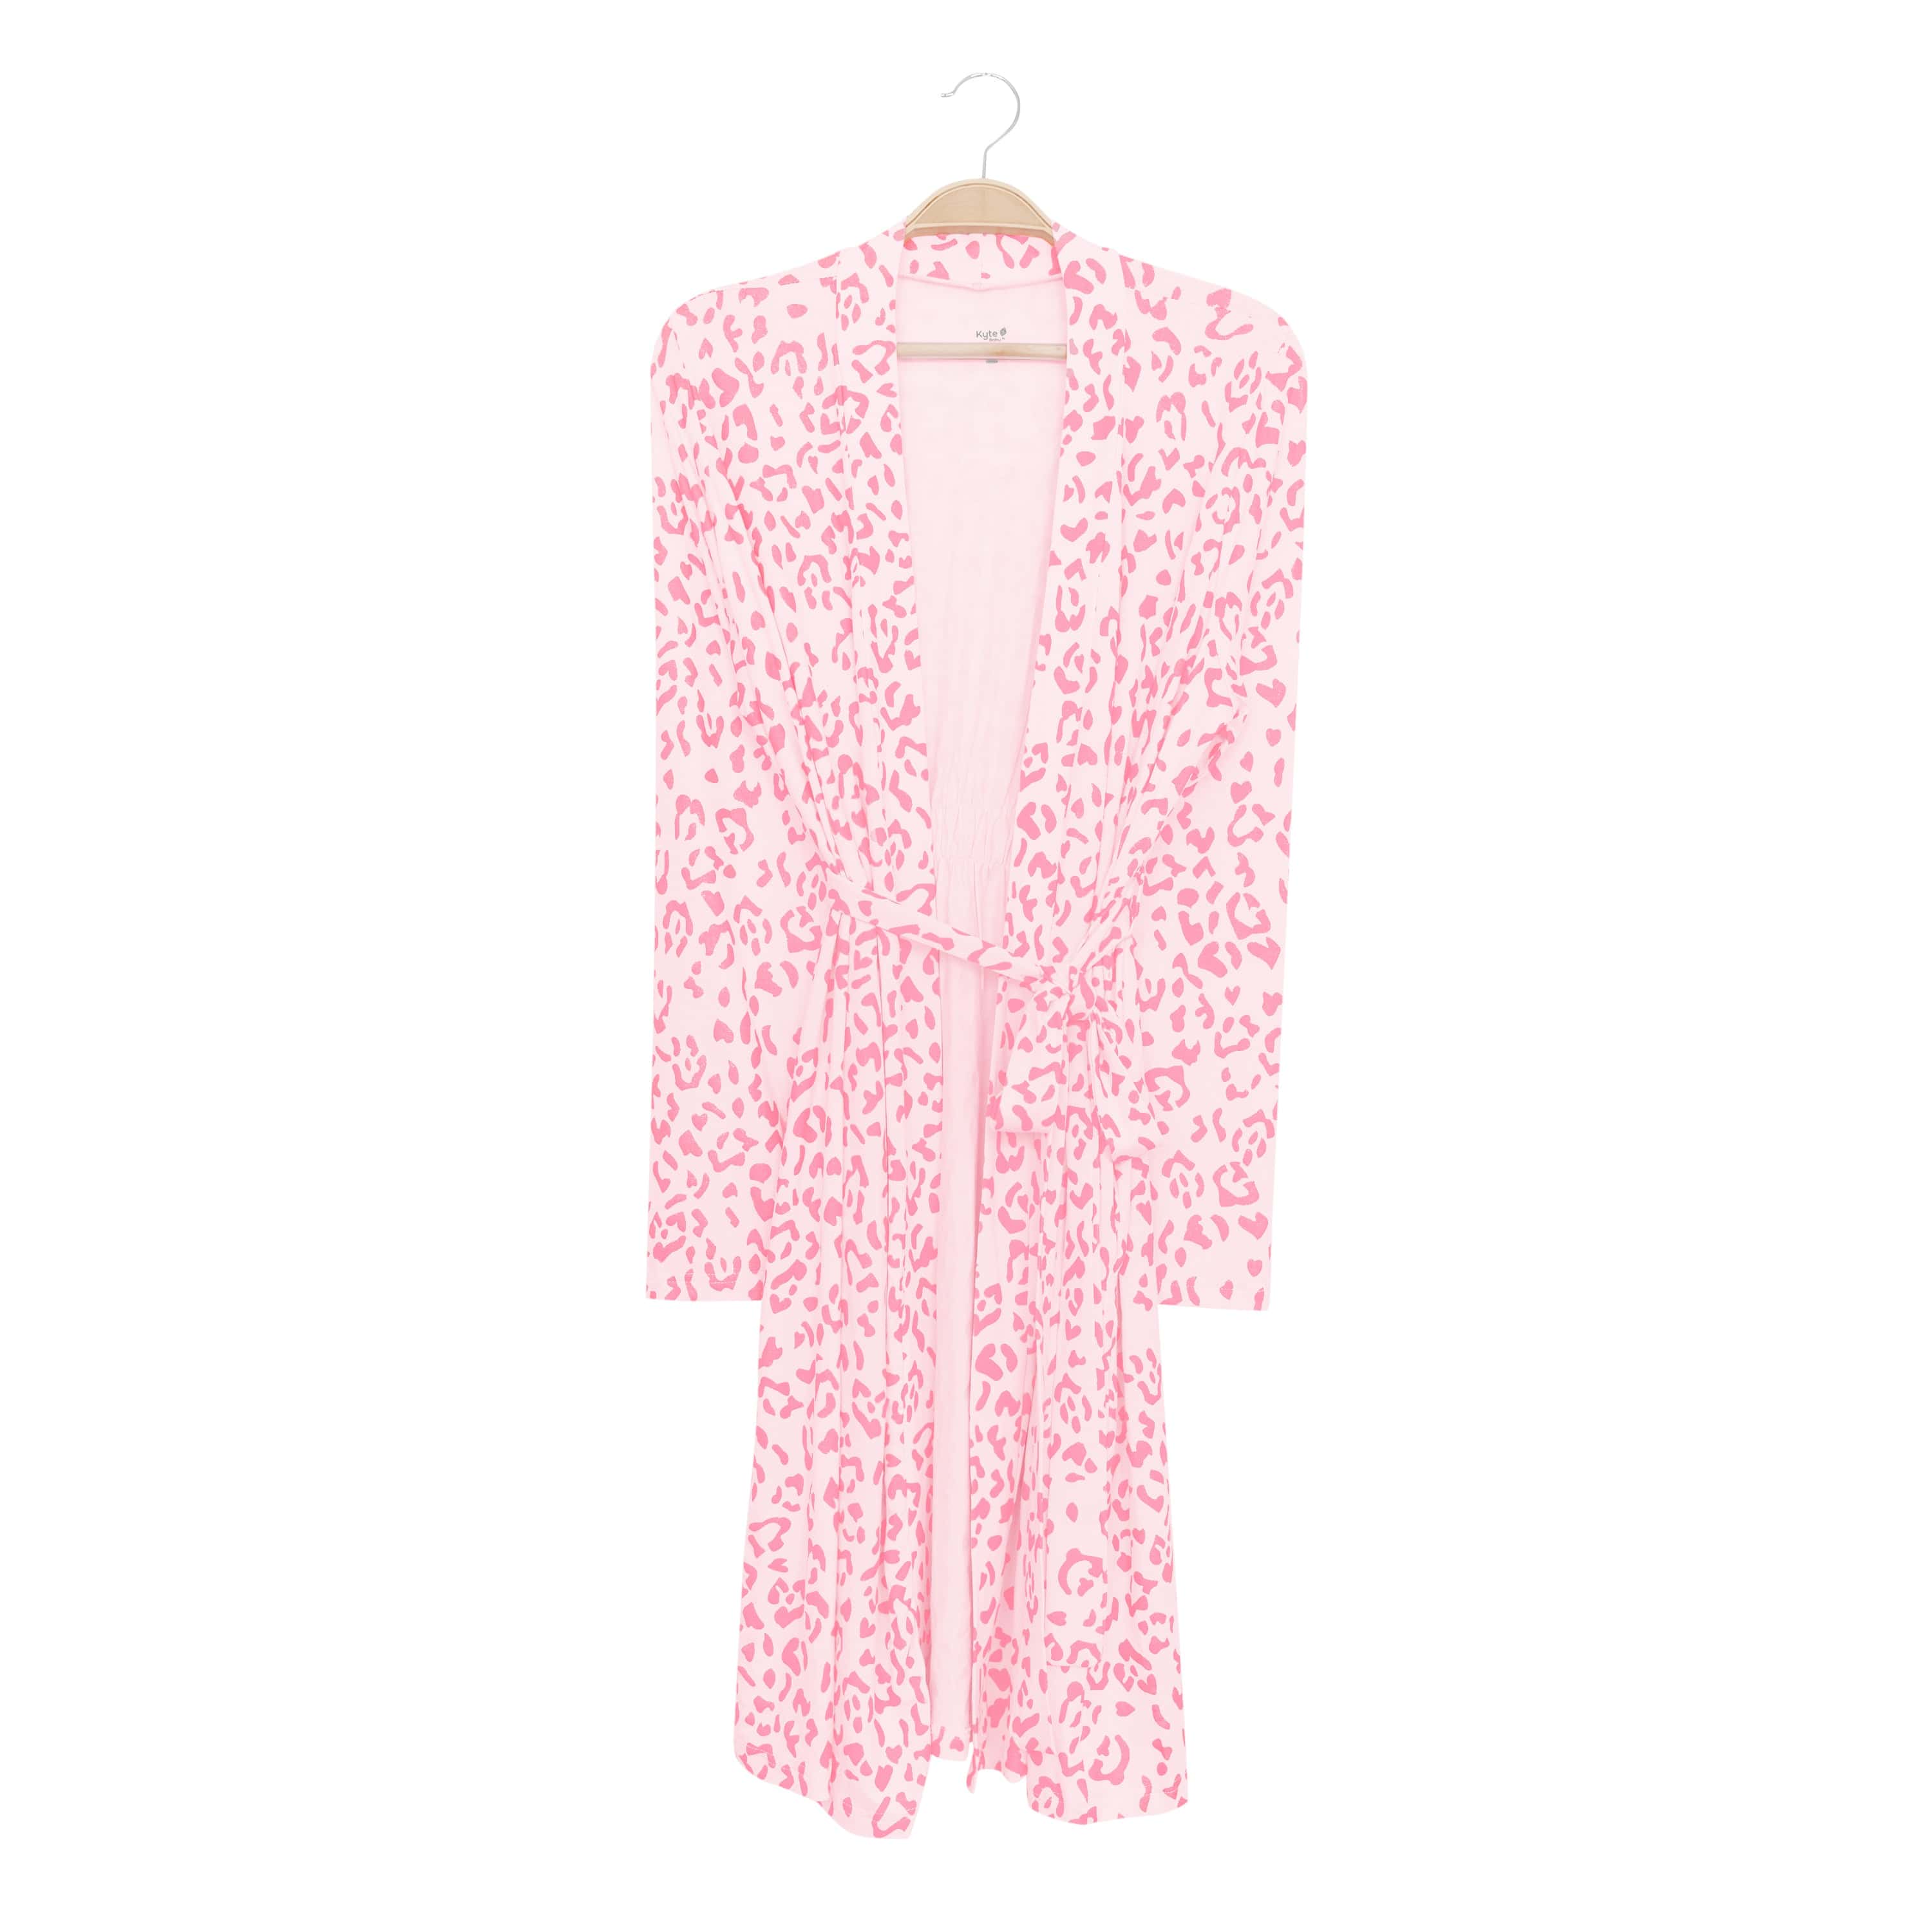 Kyte Baby Women's Lounge Robe Women’s Lounge Robe in Sakura Leopard